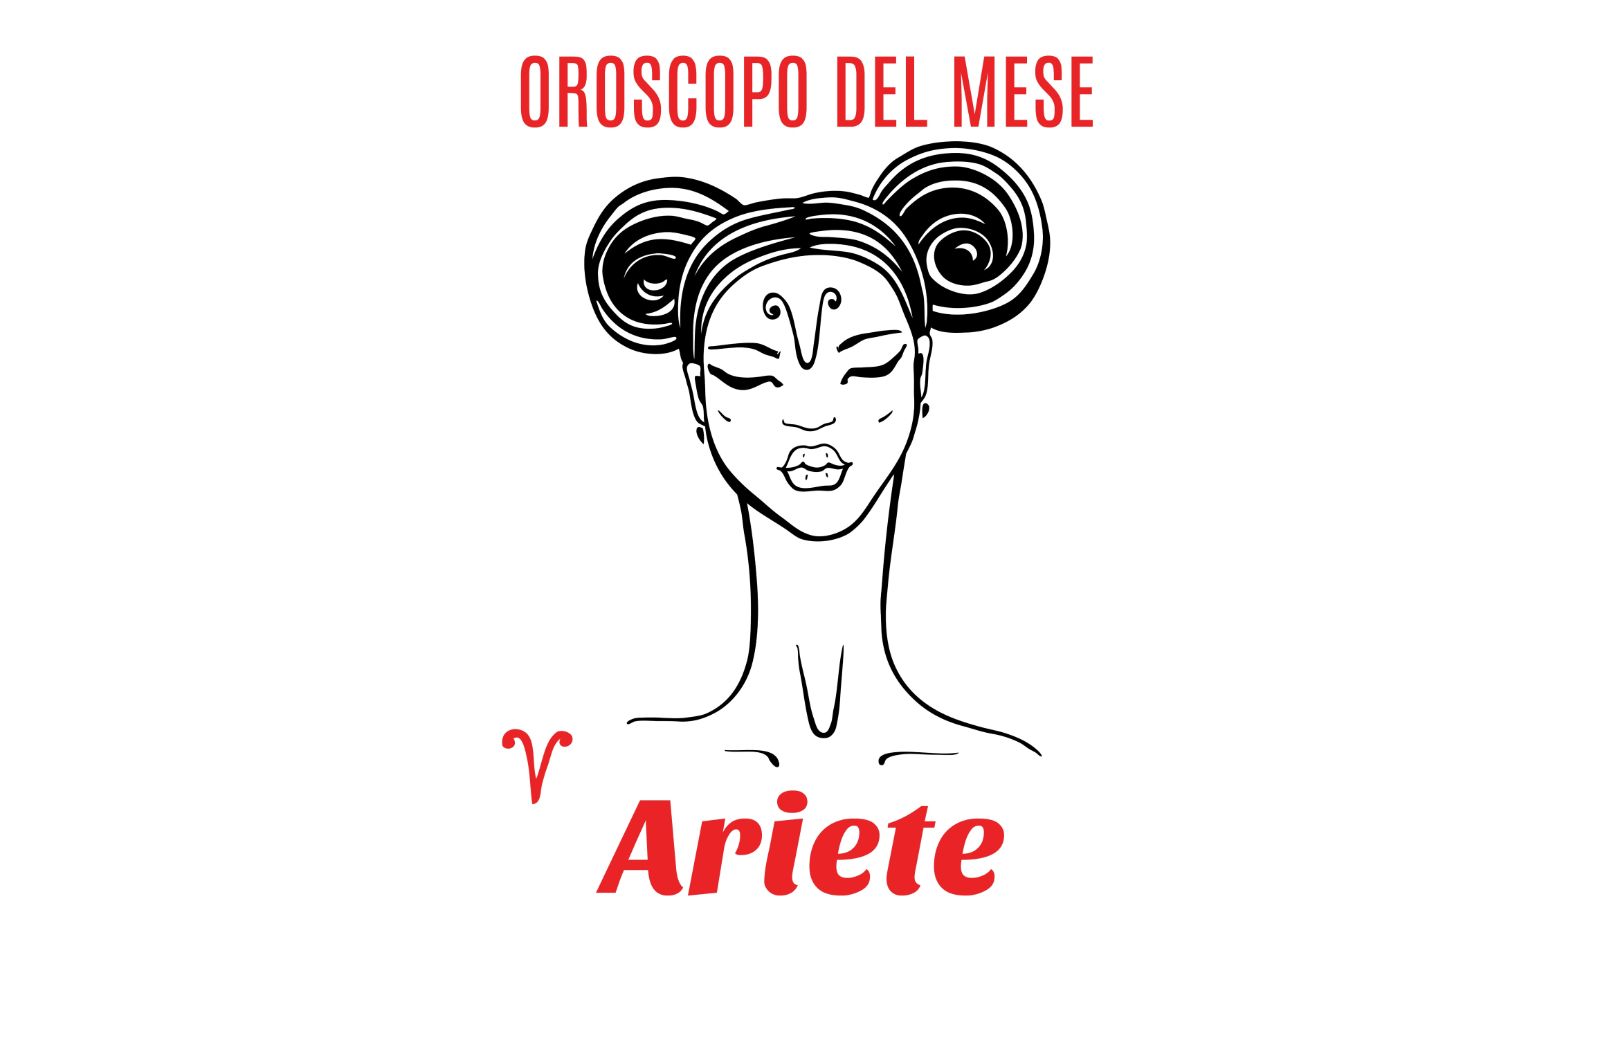 Oroscopo del mese: Ariete - agosto 2019